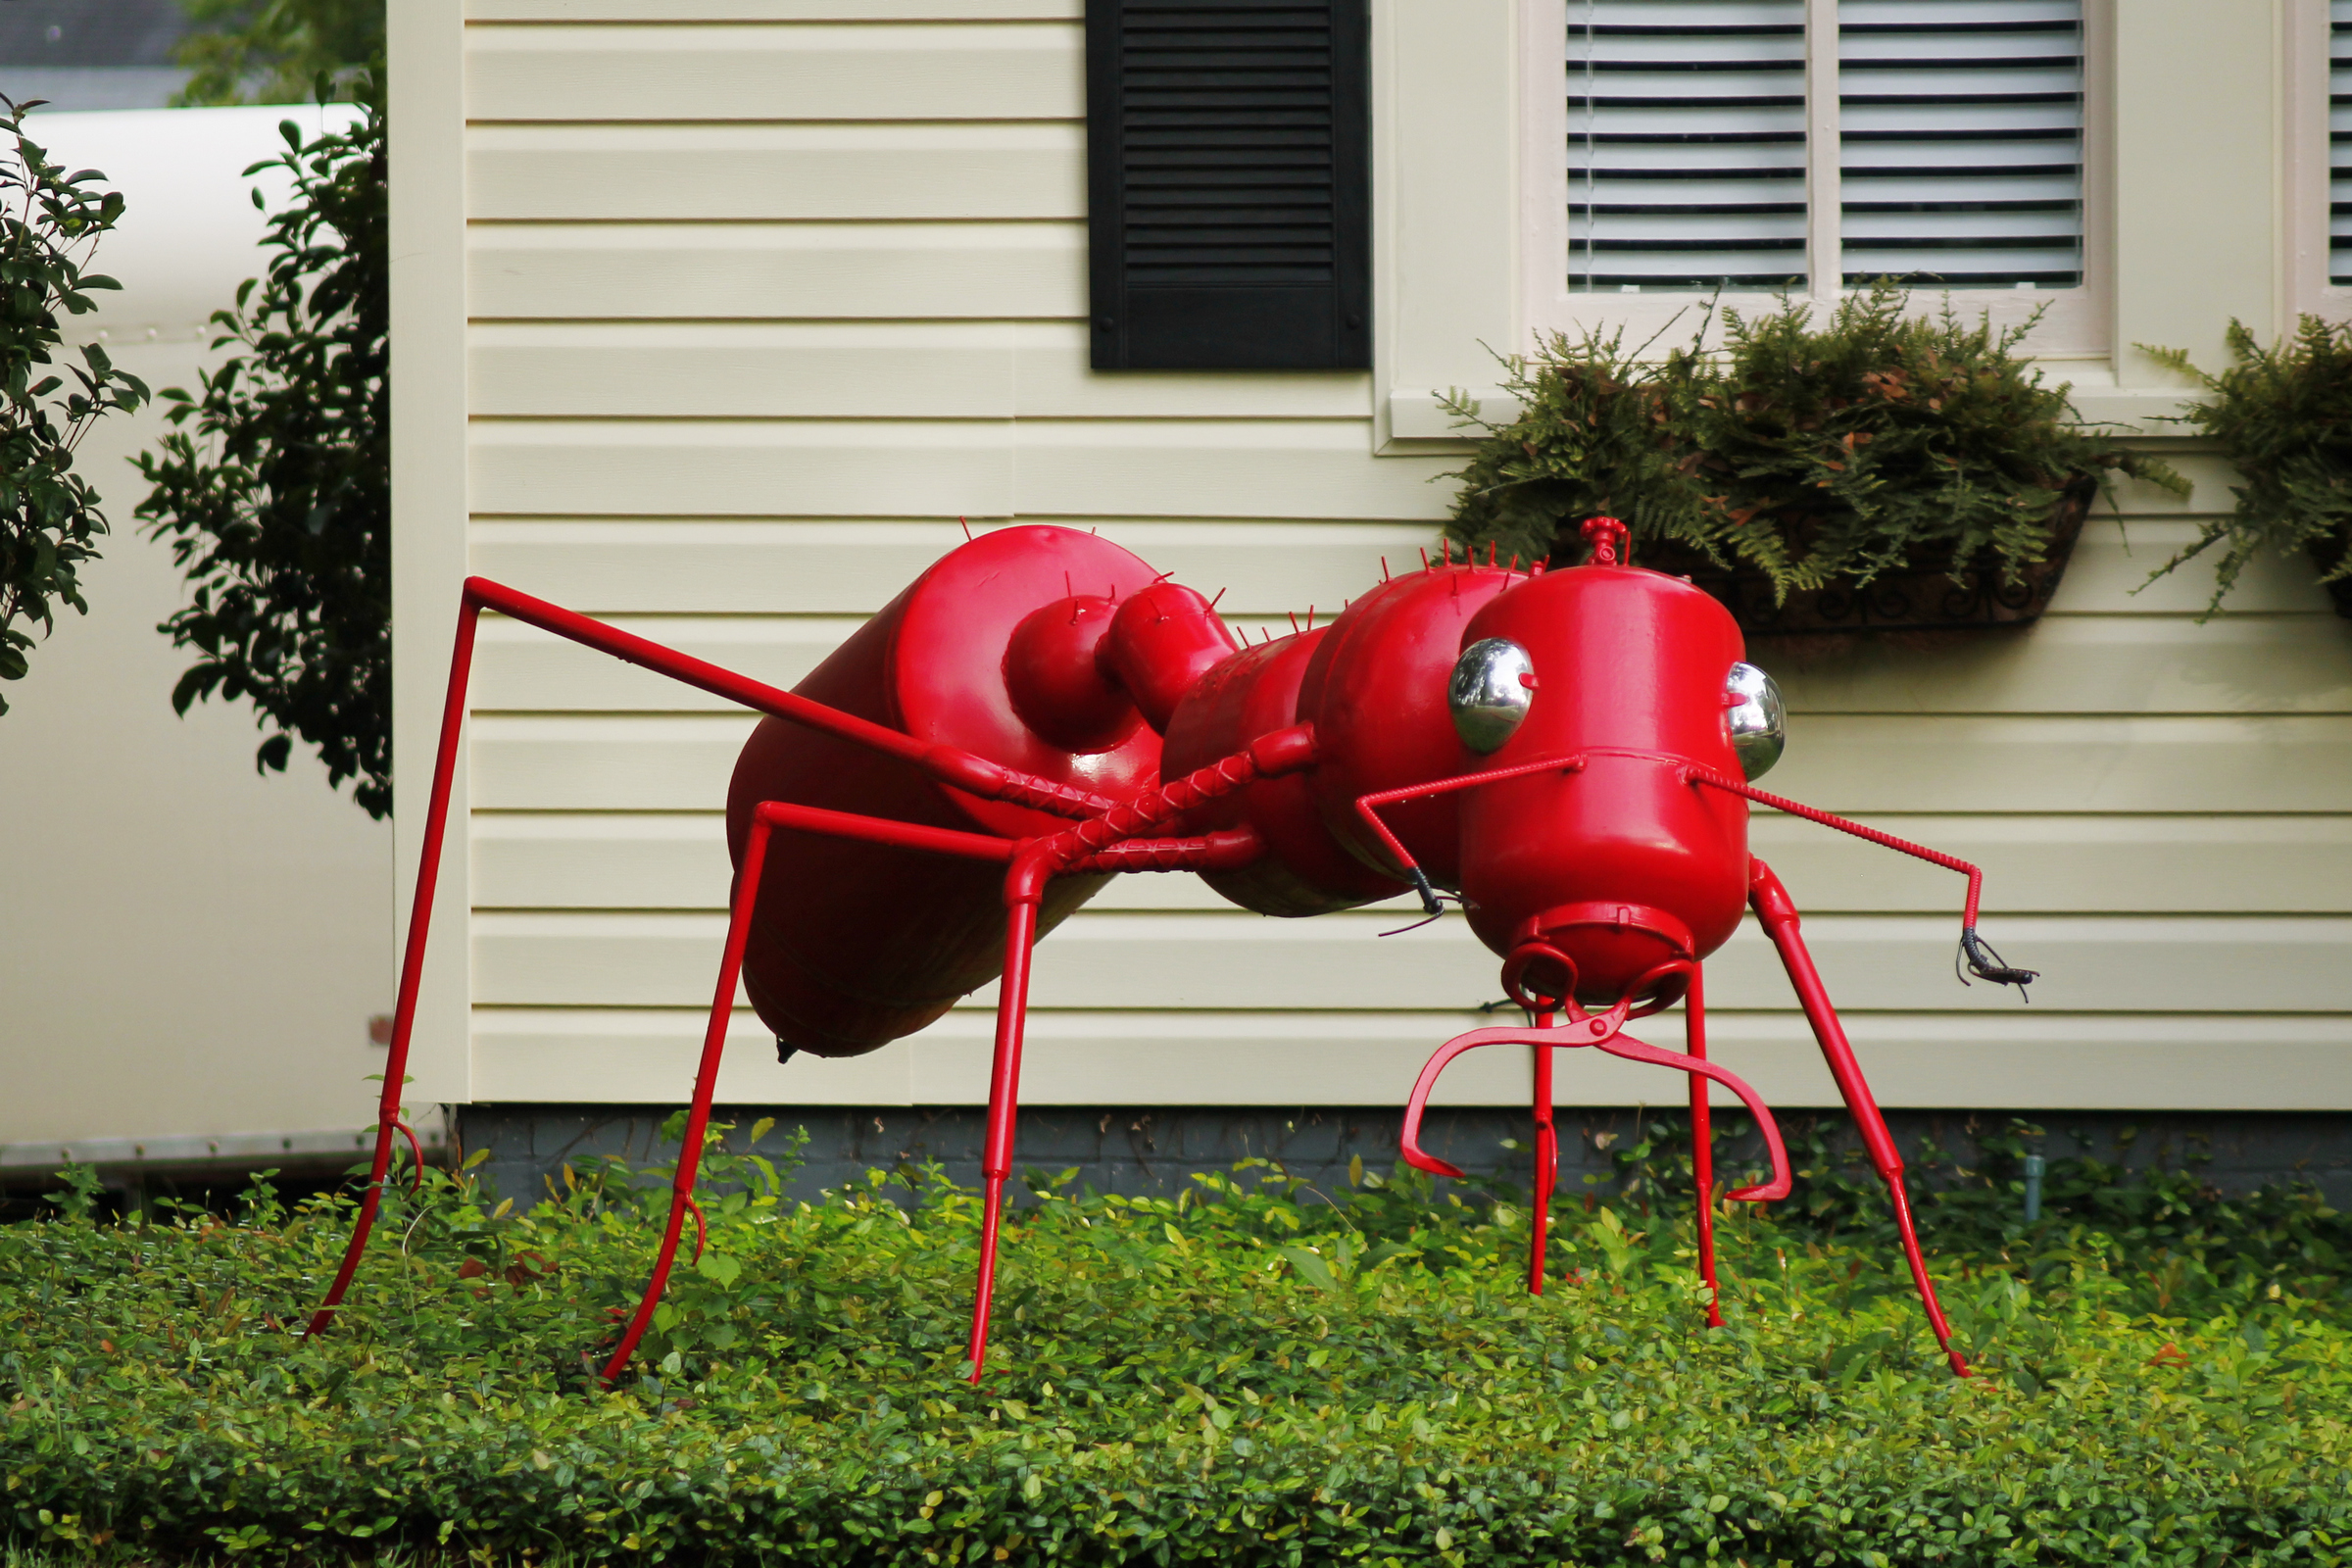 Fire ant art sculpture